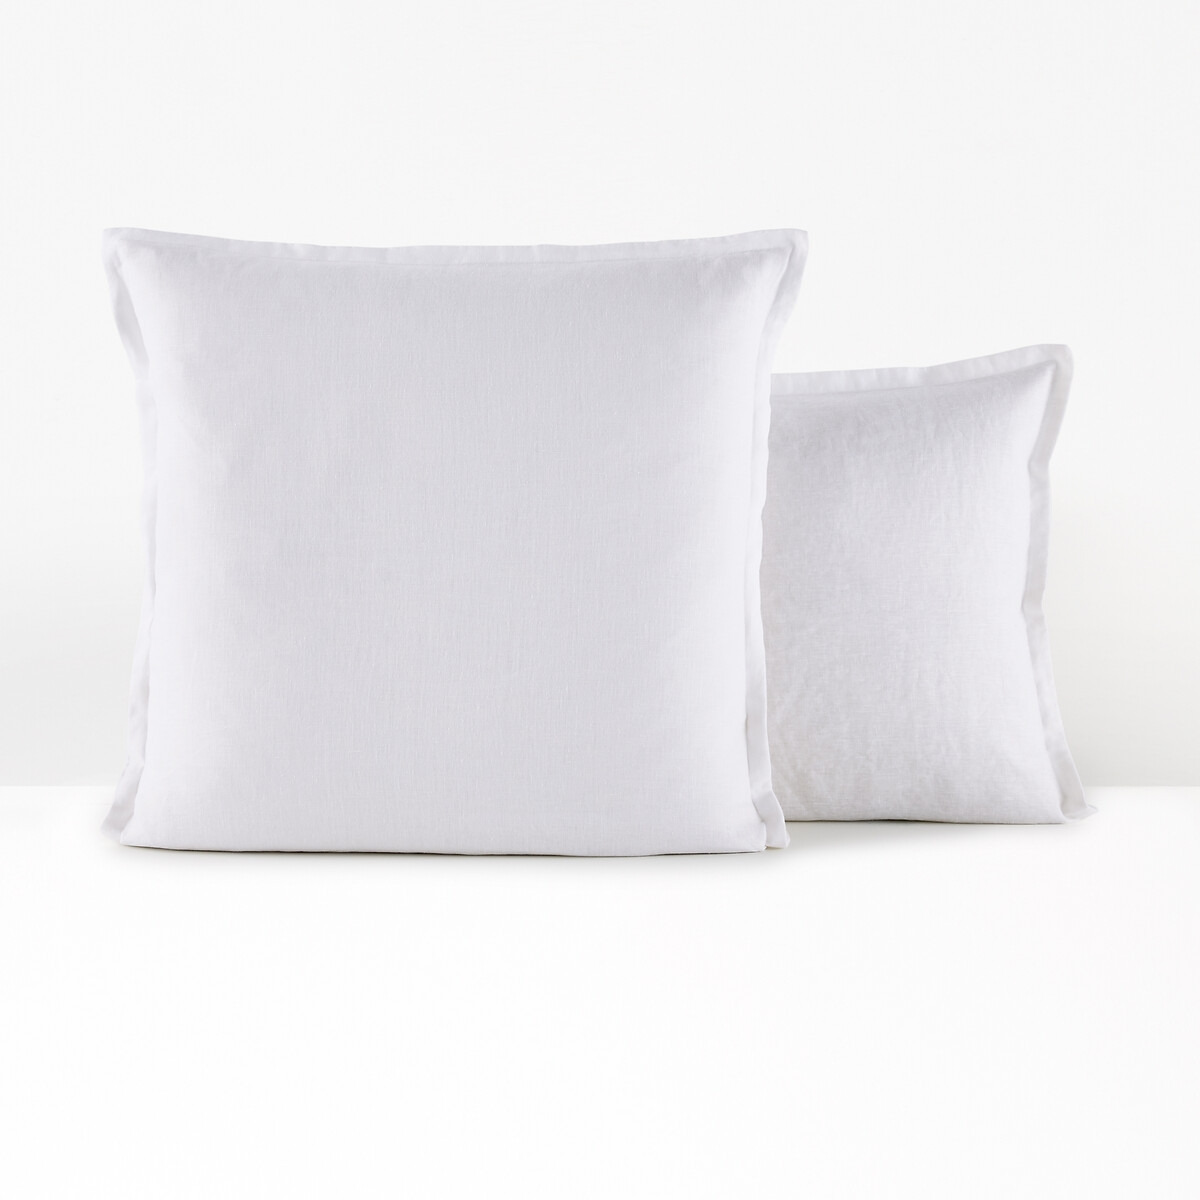 Linot Ruffle 100% Washed Linen Pillowcase - image 1